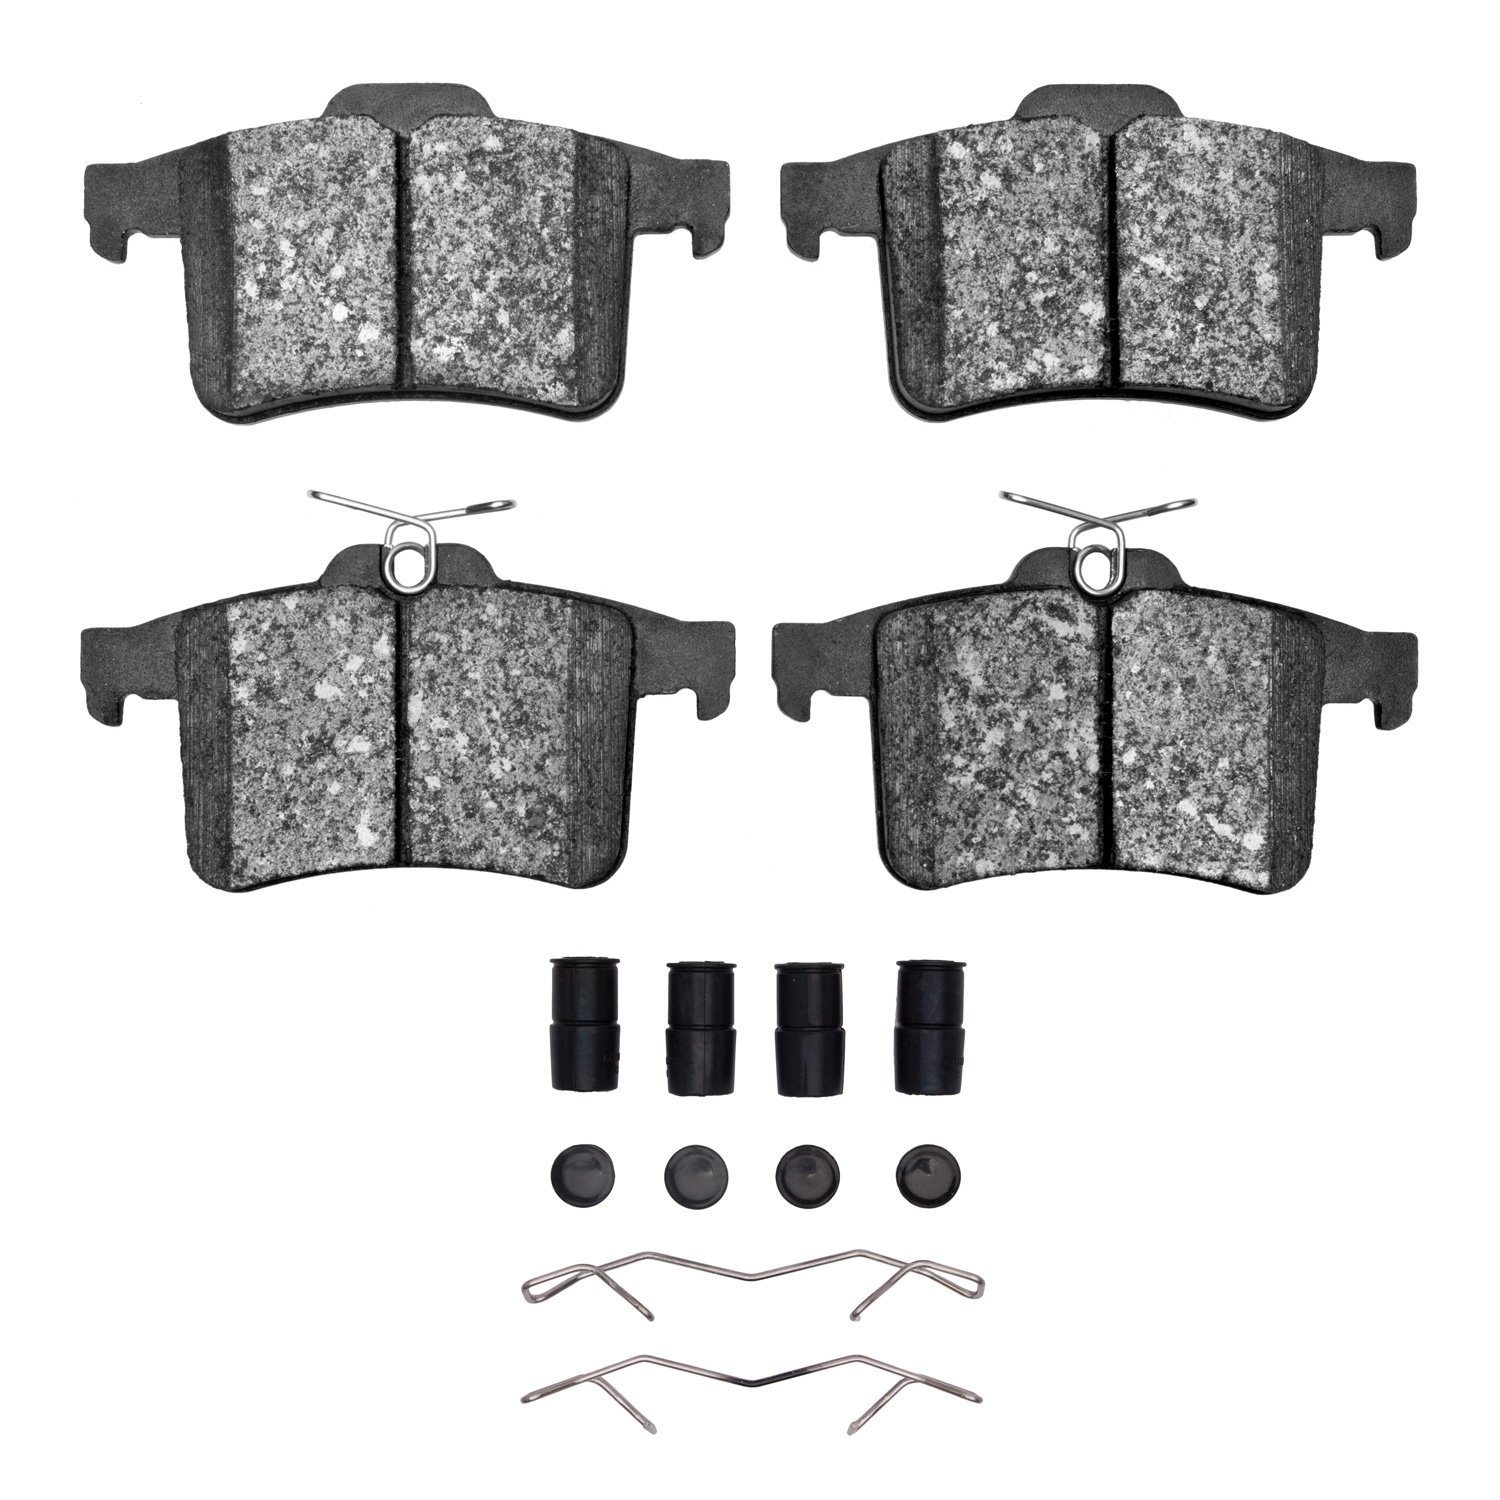 1311-1449-02 3000-Series Semi-Metallic Brake Pads & Hardware Kit, 2010-2015 Jaguar, Position: Rear